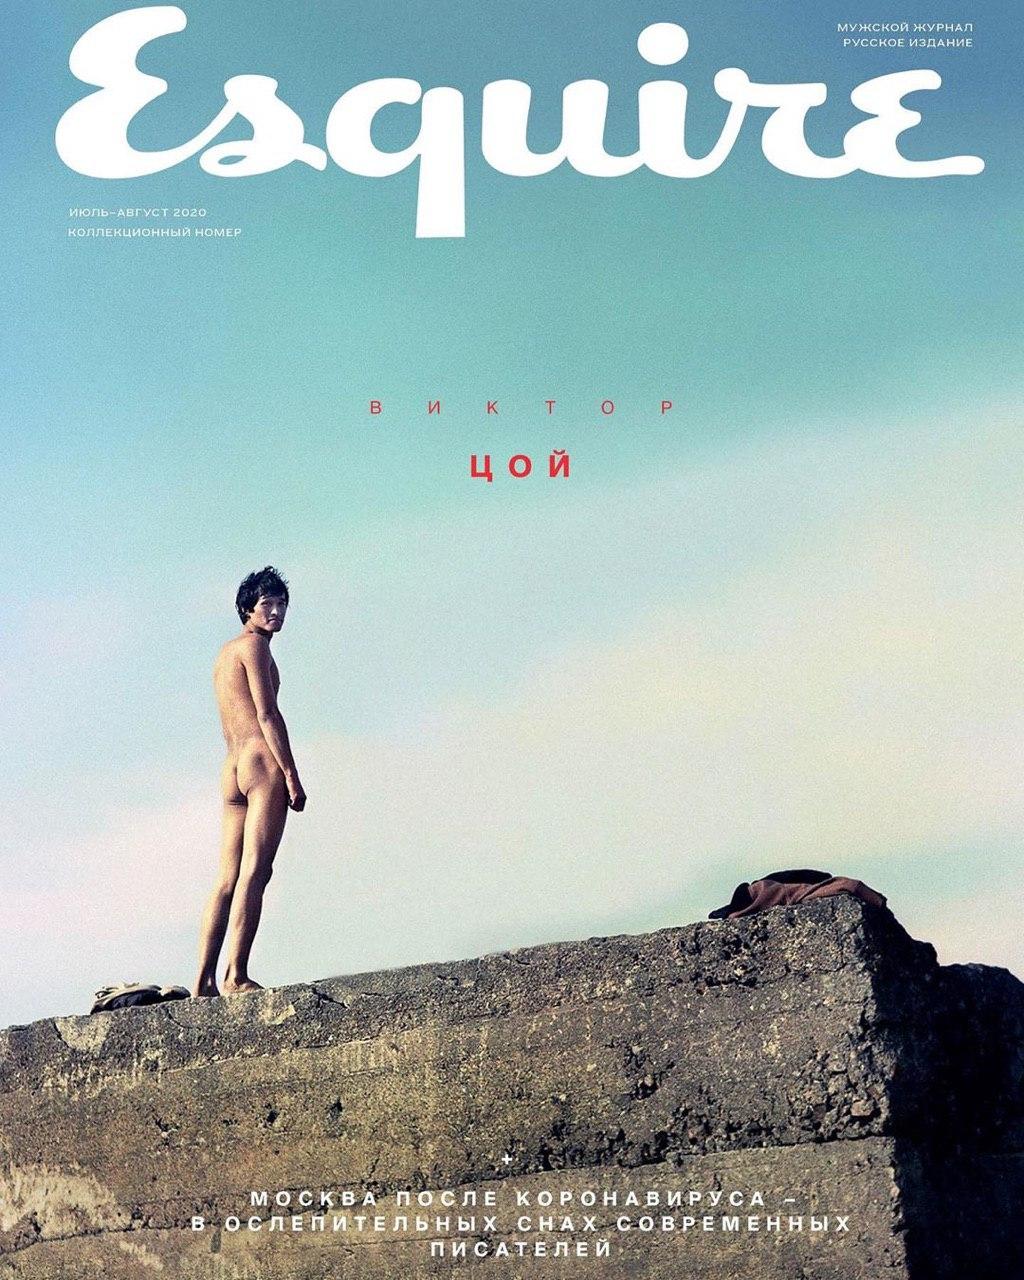 Июльский номер Esquire выйдет с фото обнаженного Виктора Цоя на обложке (фото 1)